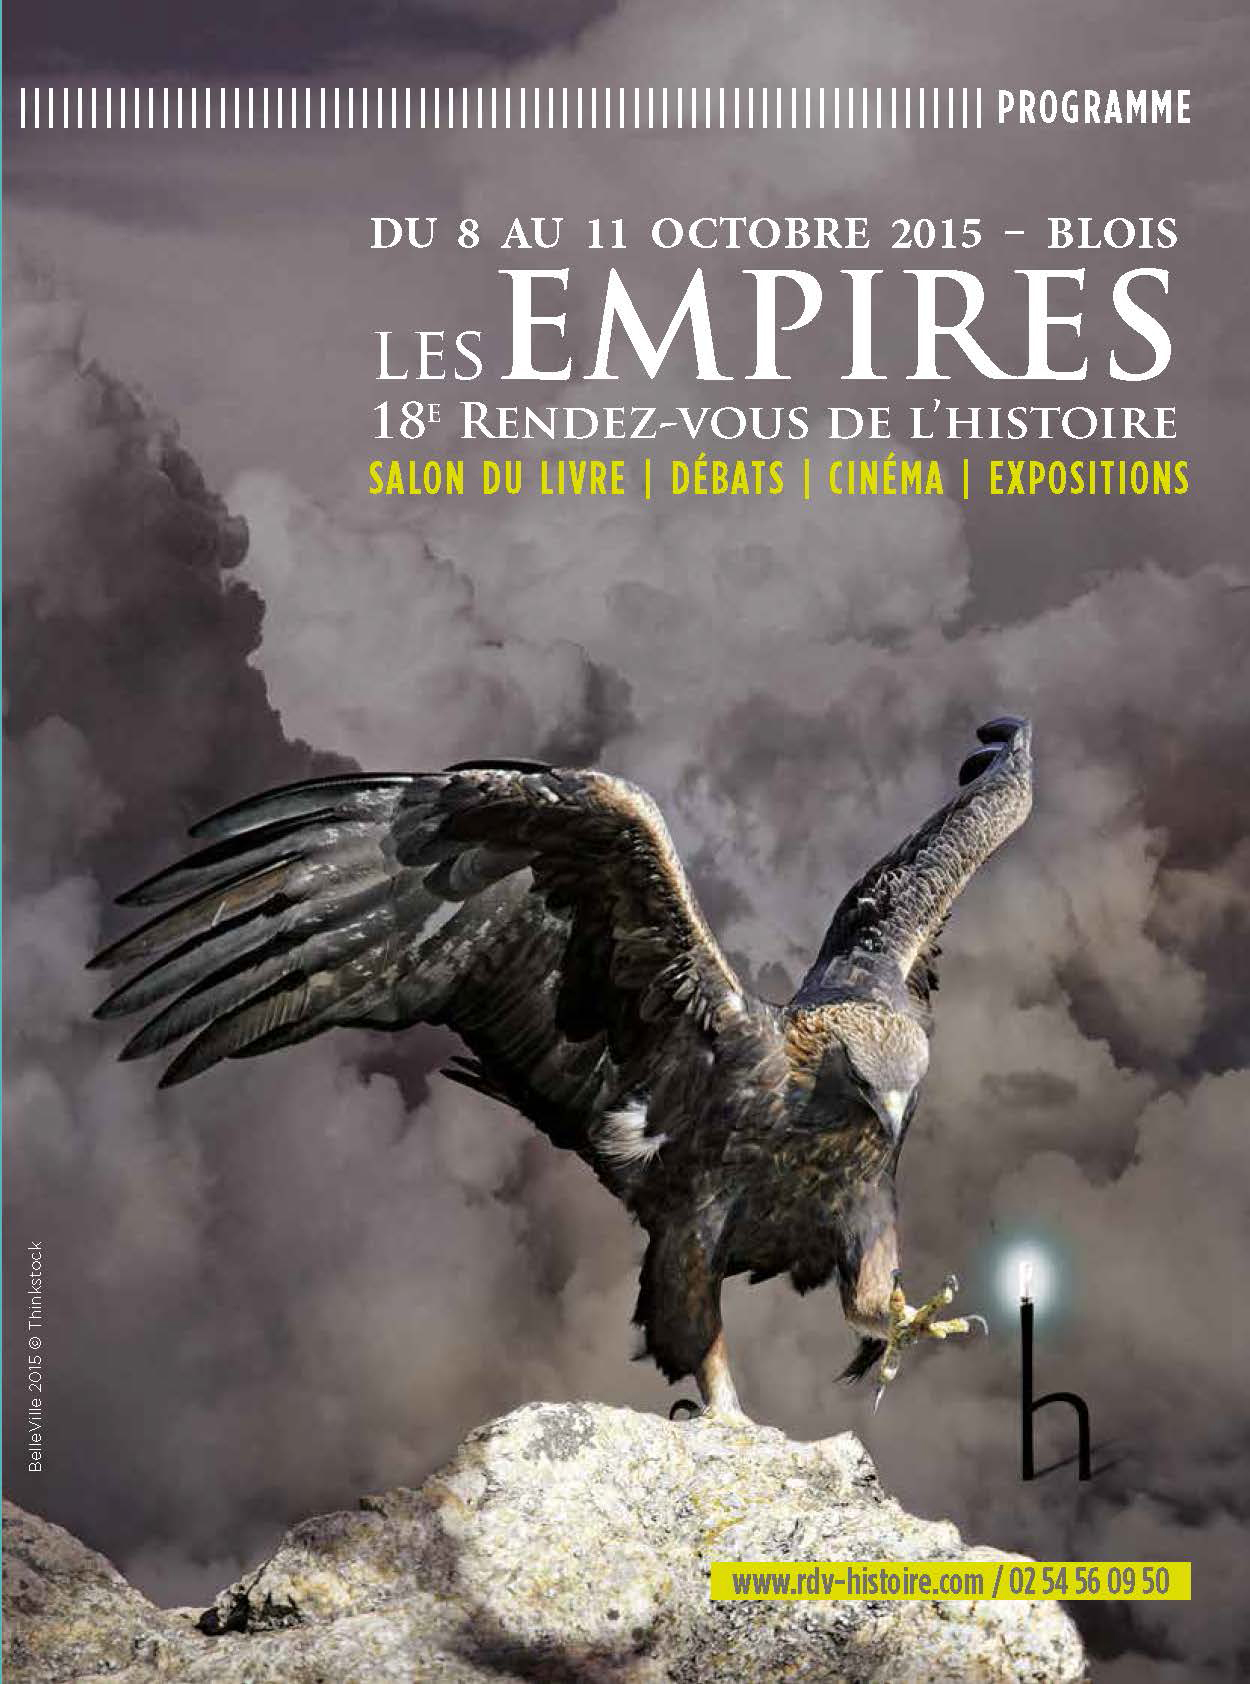 Les Empires - 18e Rendez-vous de l'histoire, du 8 au 11 octobre 2015 à Blois